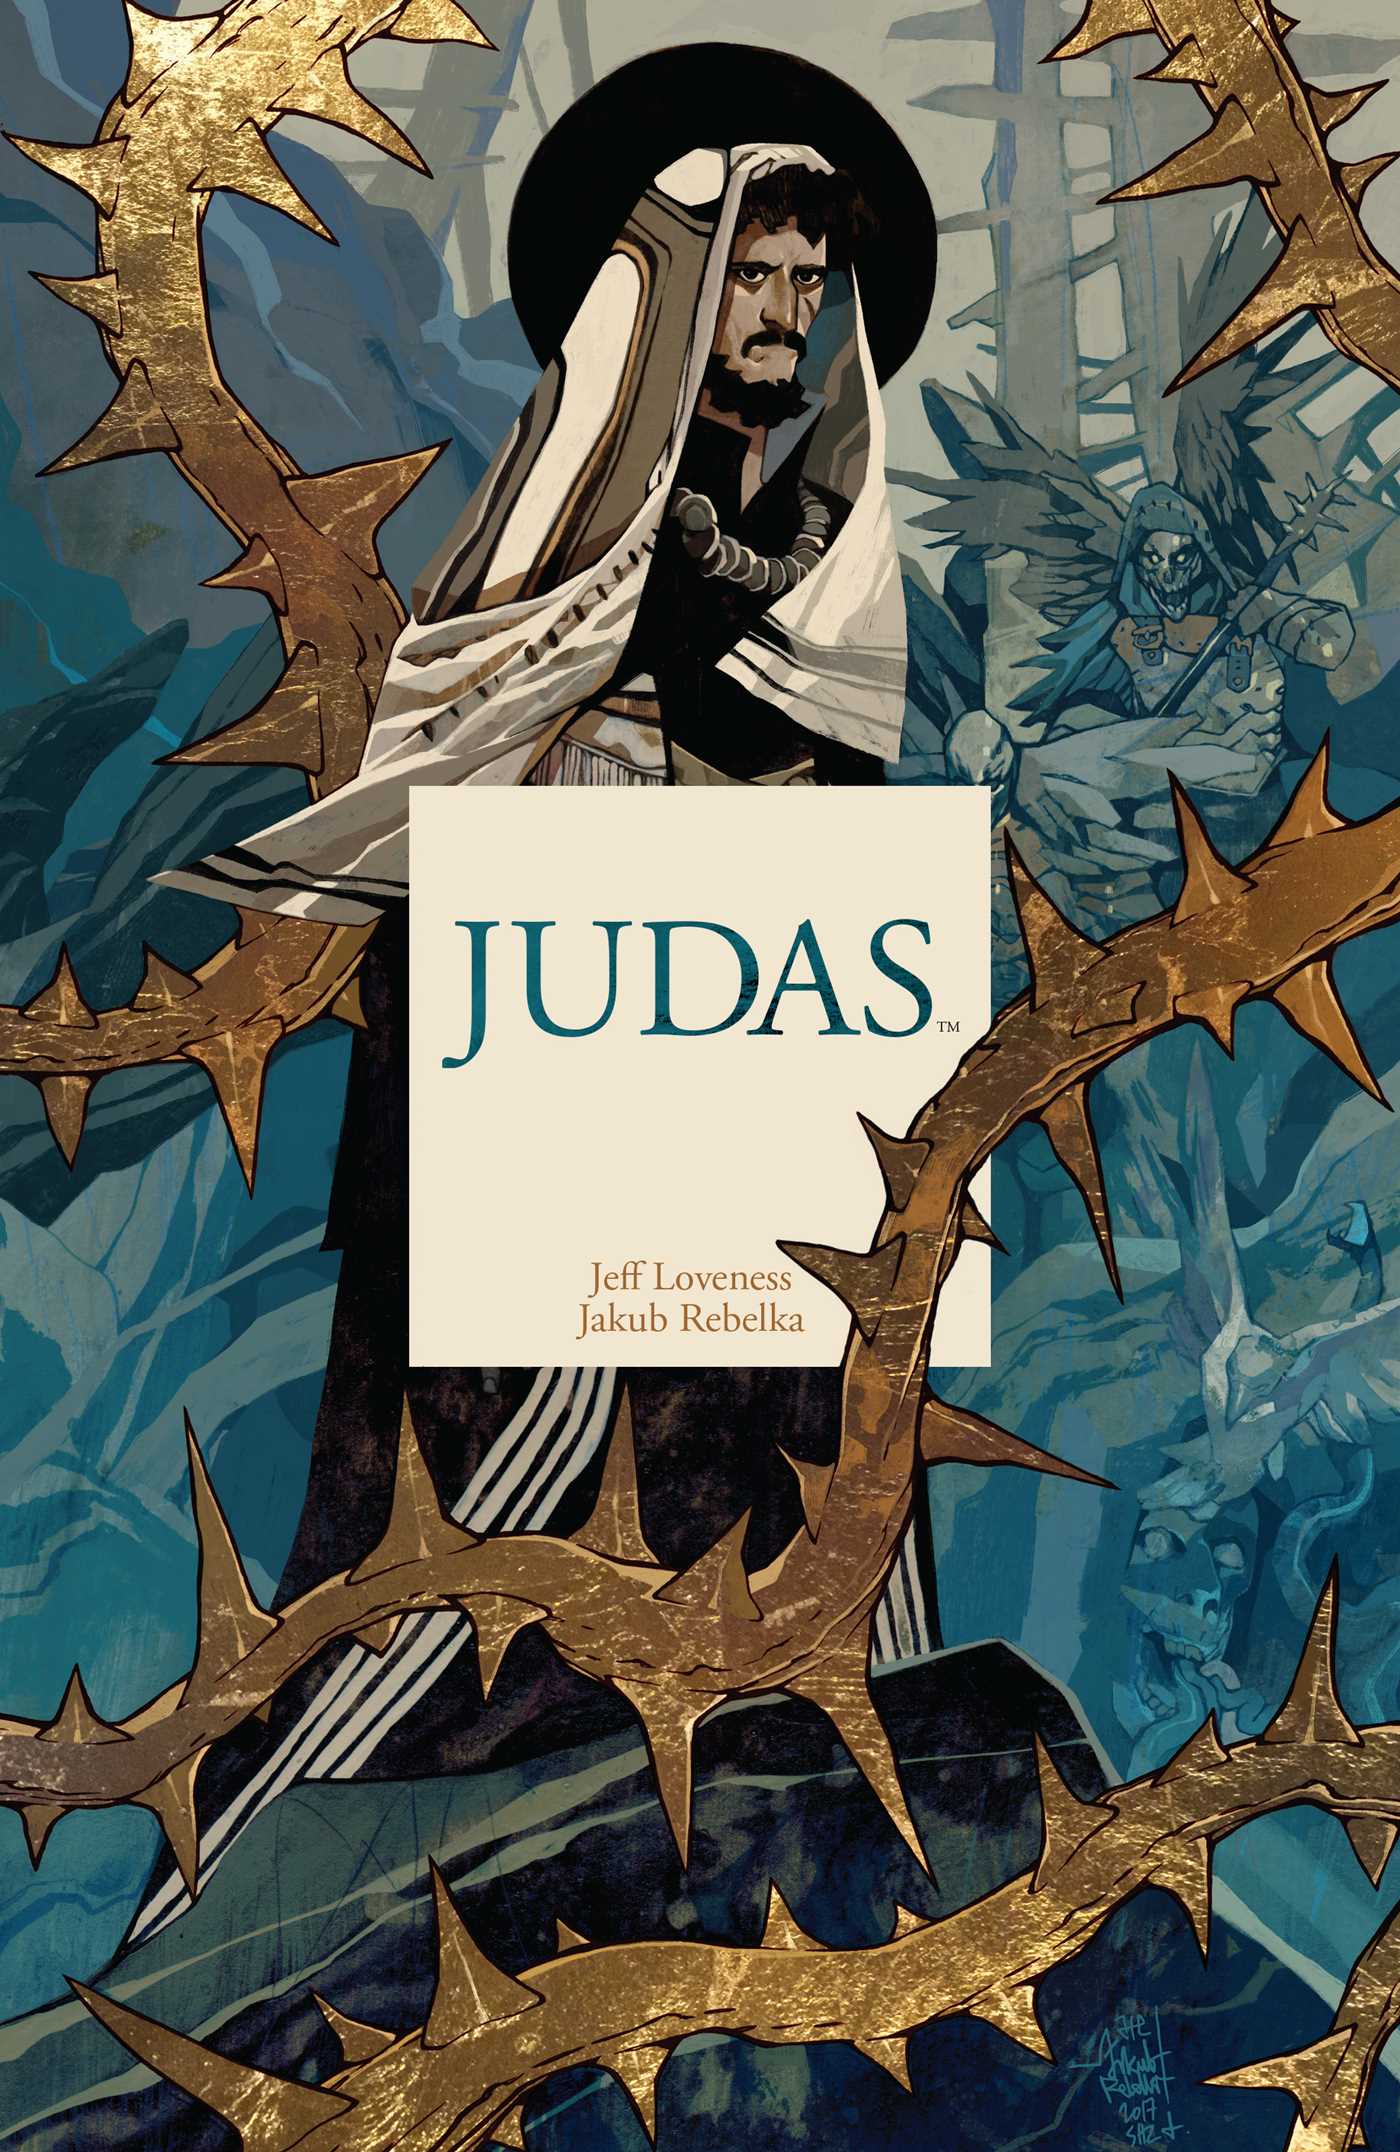 Judas | Book by Jeff Loveness, Jakub Rebelka | Official Publisher ...